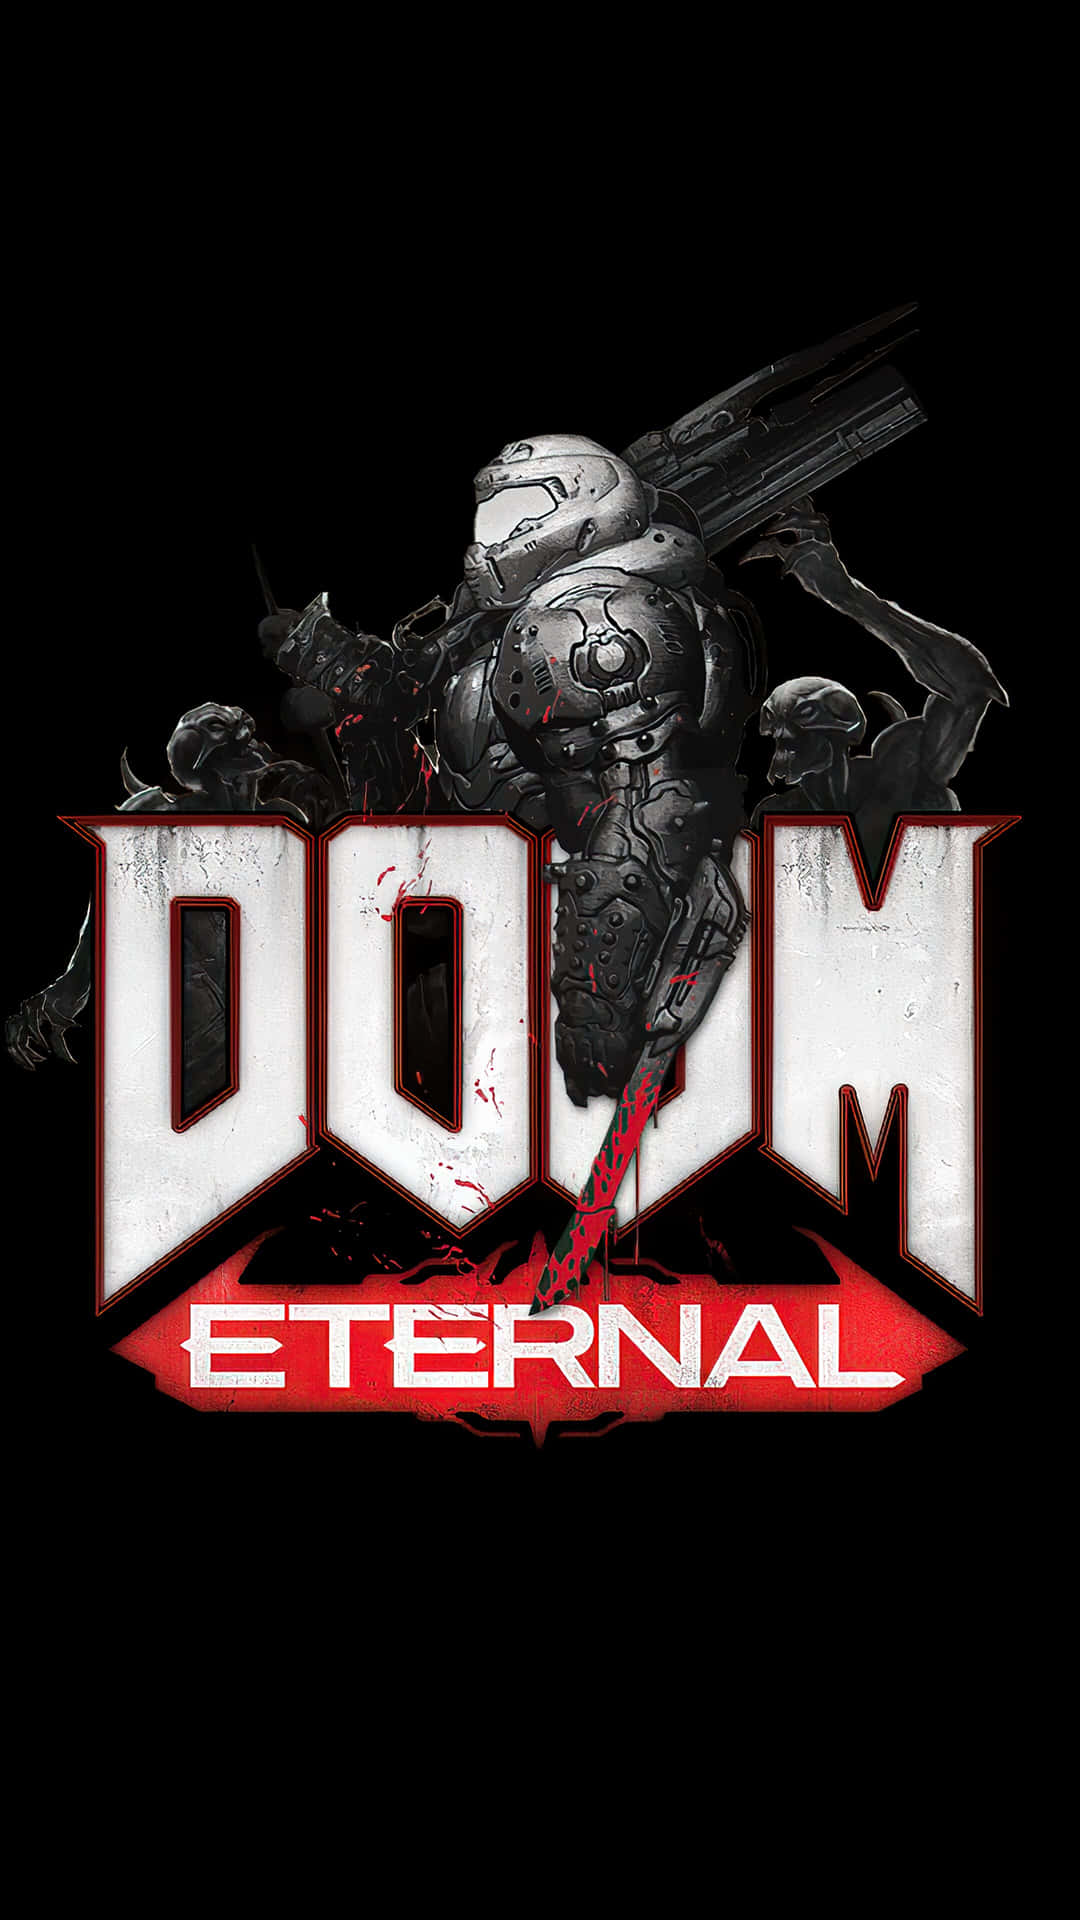 Tag din spiloplevelse til det næste niveau med Doom Eternal til iPhone. Wallpaper